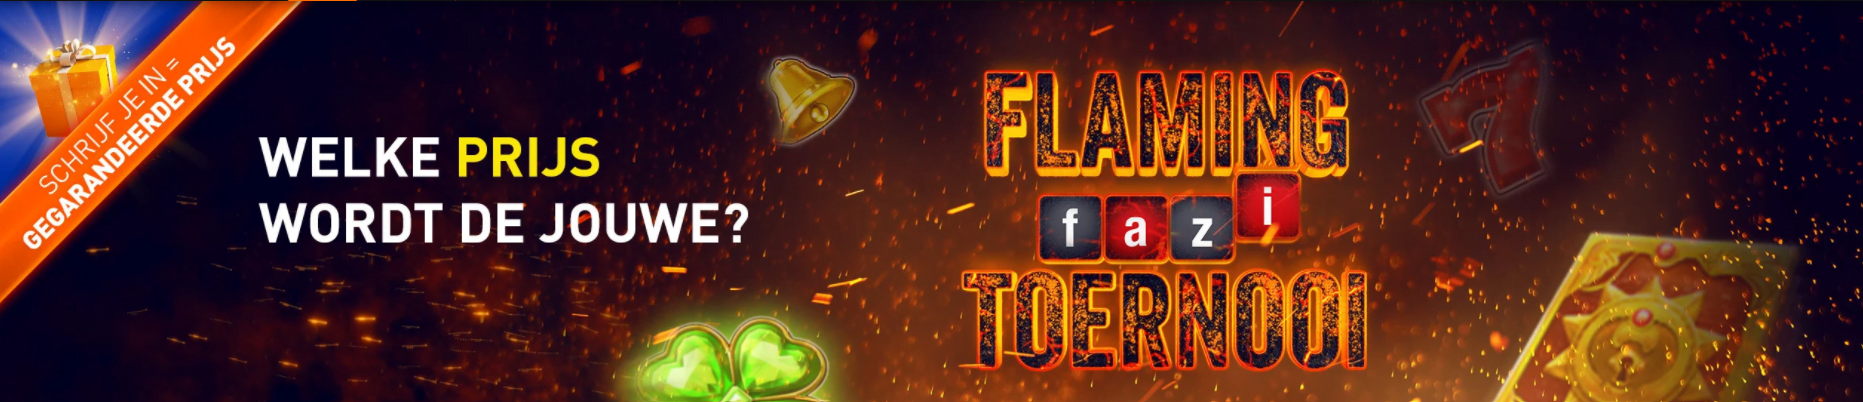 Flaming Fazi toernooi Casino 777 online speelhal gokken Jackpot Prijzenpot slot gokkast videoslots 2021